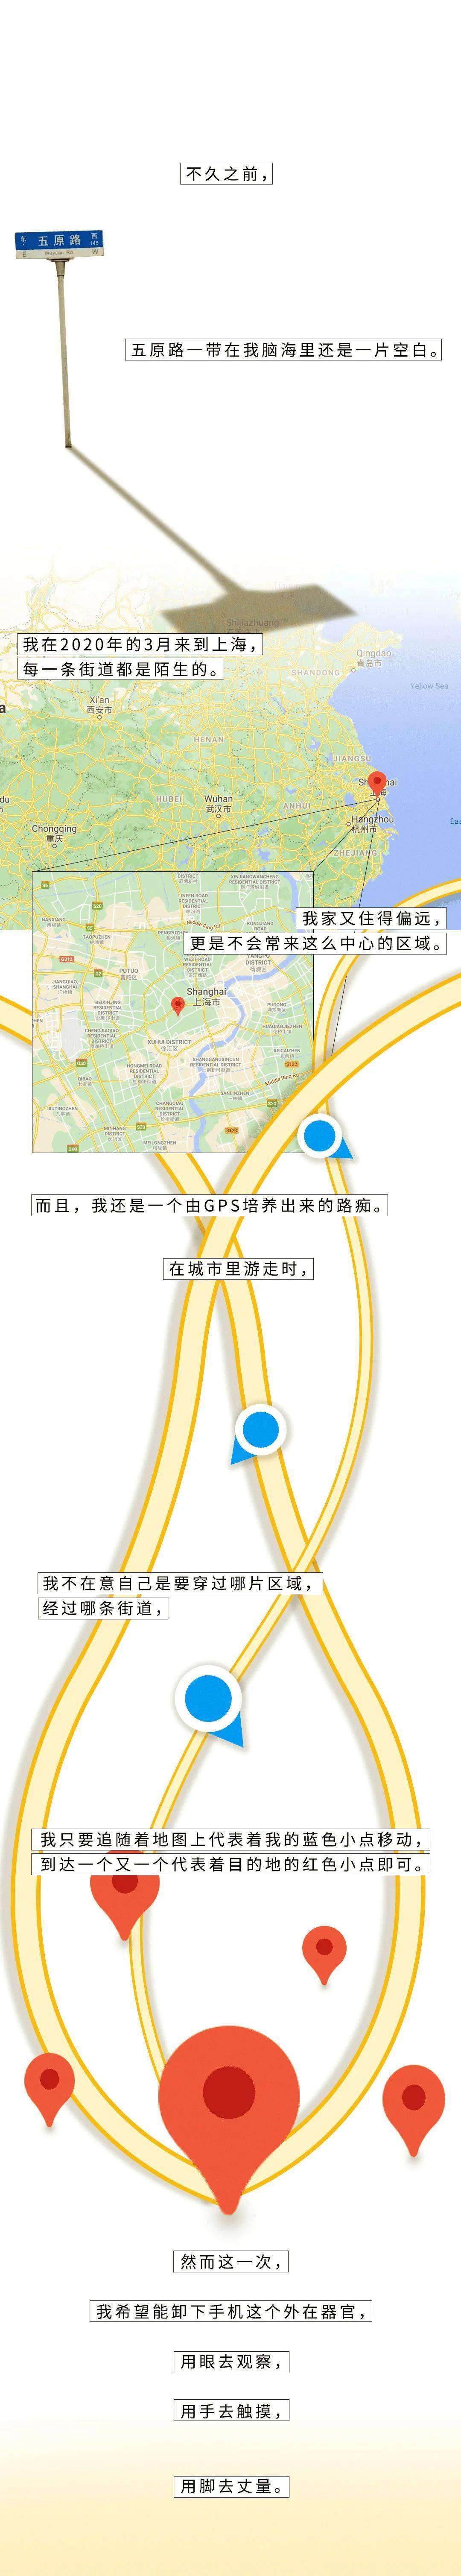 上海轧马路事件告示